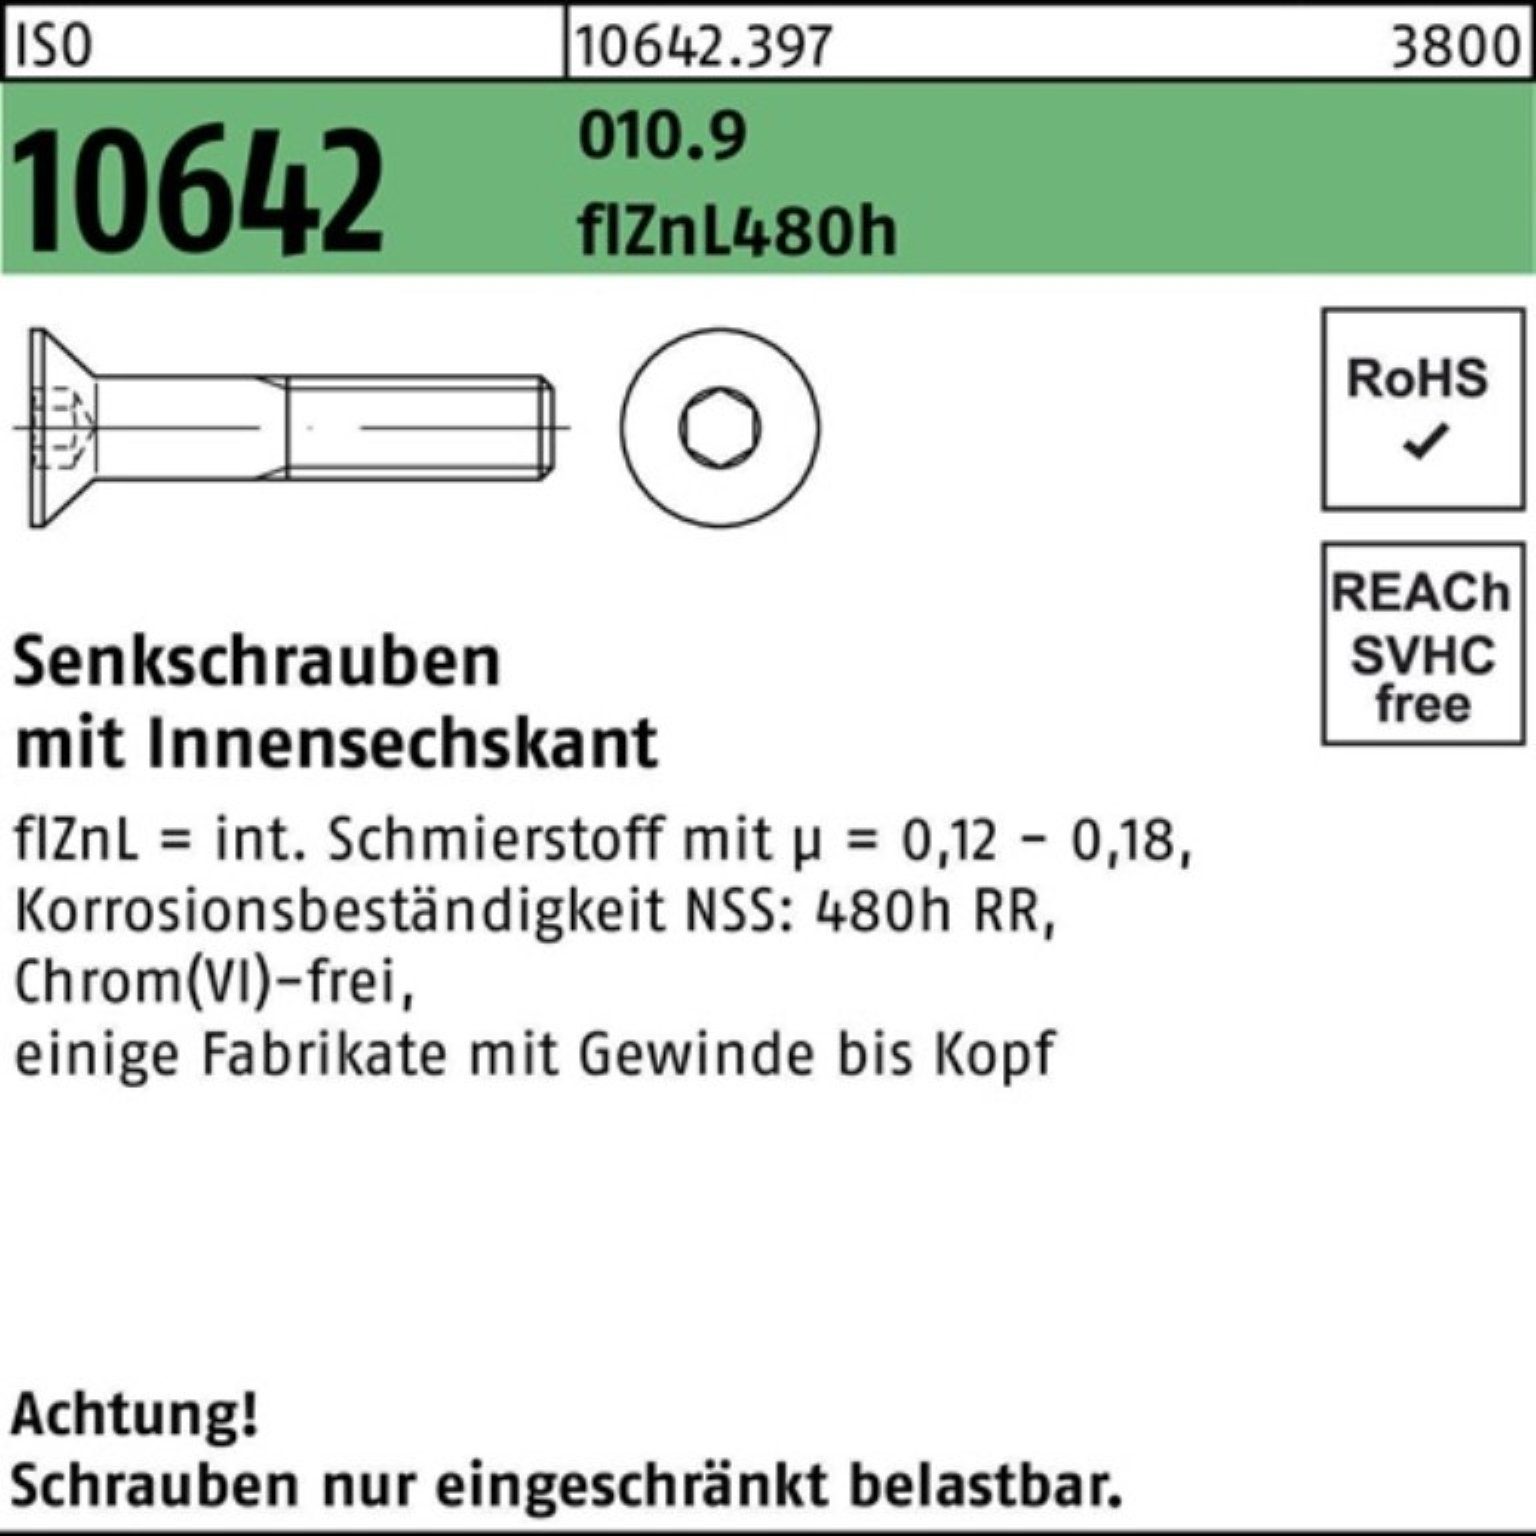 Reyher Senkschraube 100er zi Senkschraube Pack 480h 010.9 Innen-6kt M12x45 ISO flZnL 10642